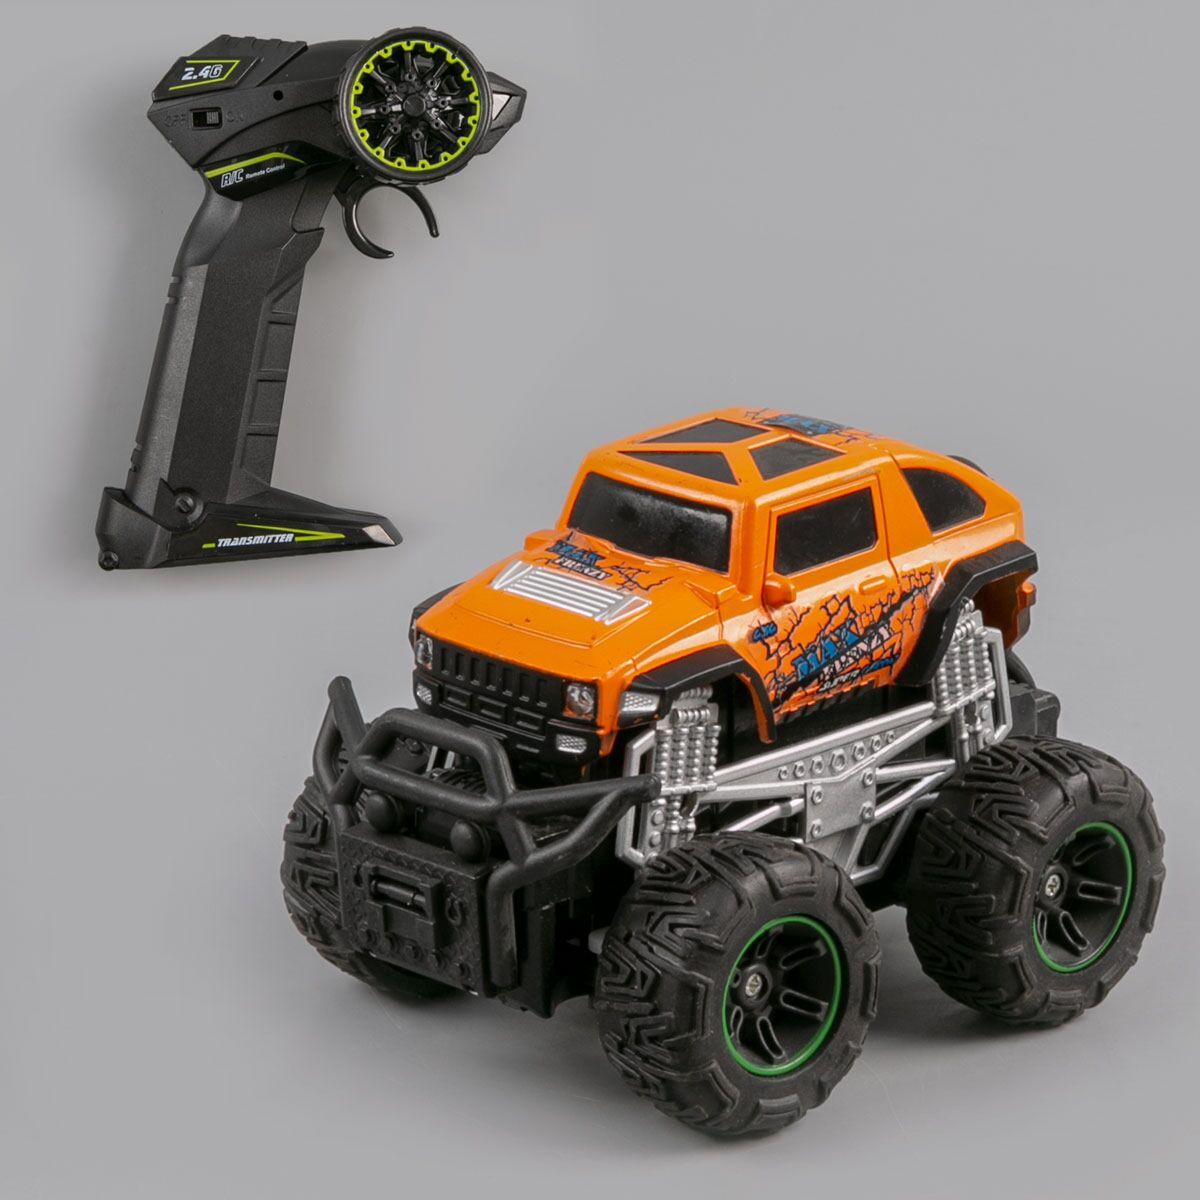 Cross Country: Радиоуправляемая машинка внедорожник Monster Jam на пульте управления, 1:32, оранжевый, фото 1